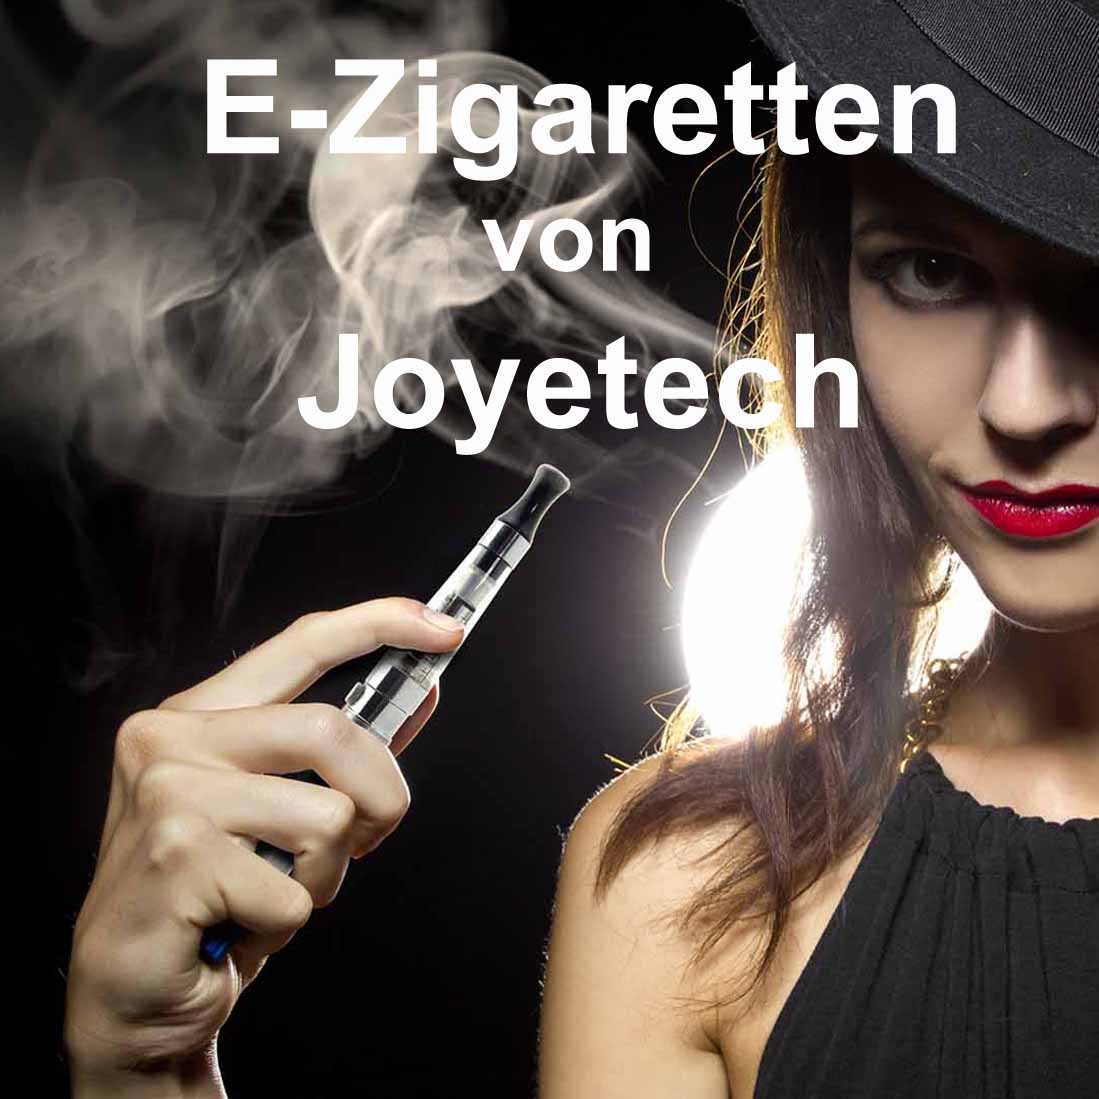 E-zigaretten in Der Zeitungsladen in Nürnberg